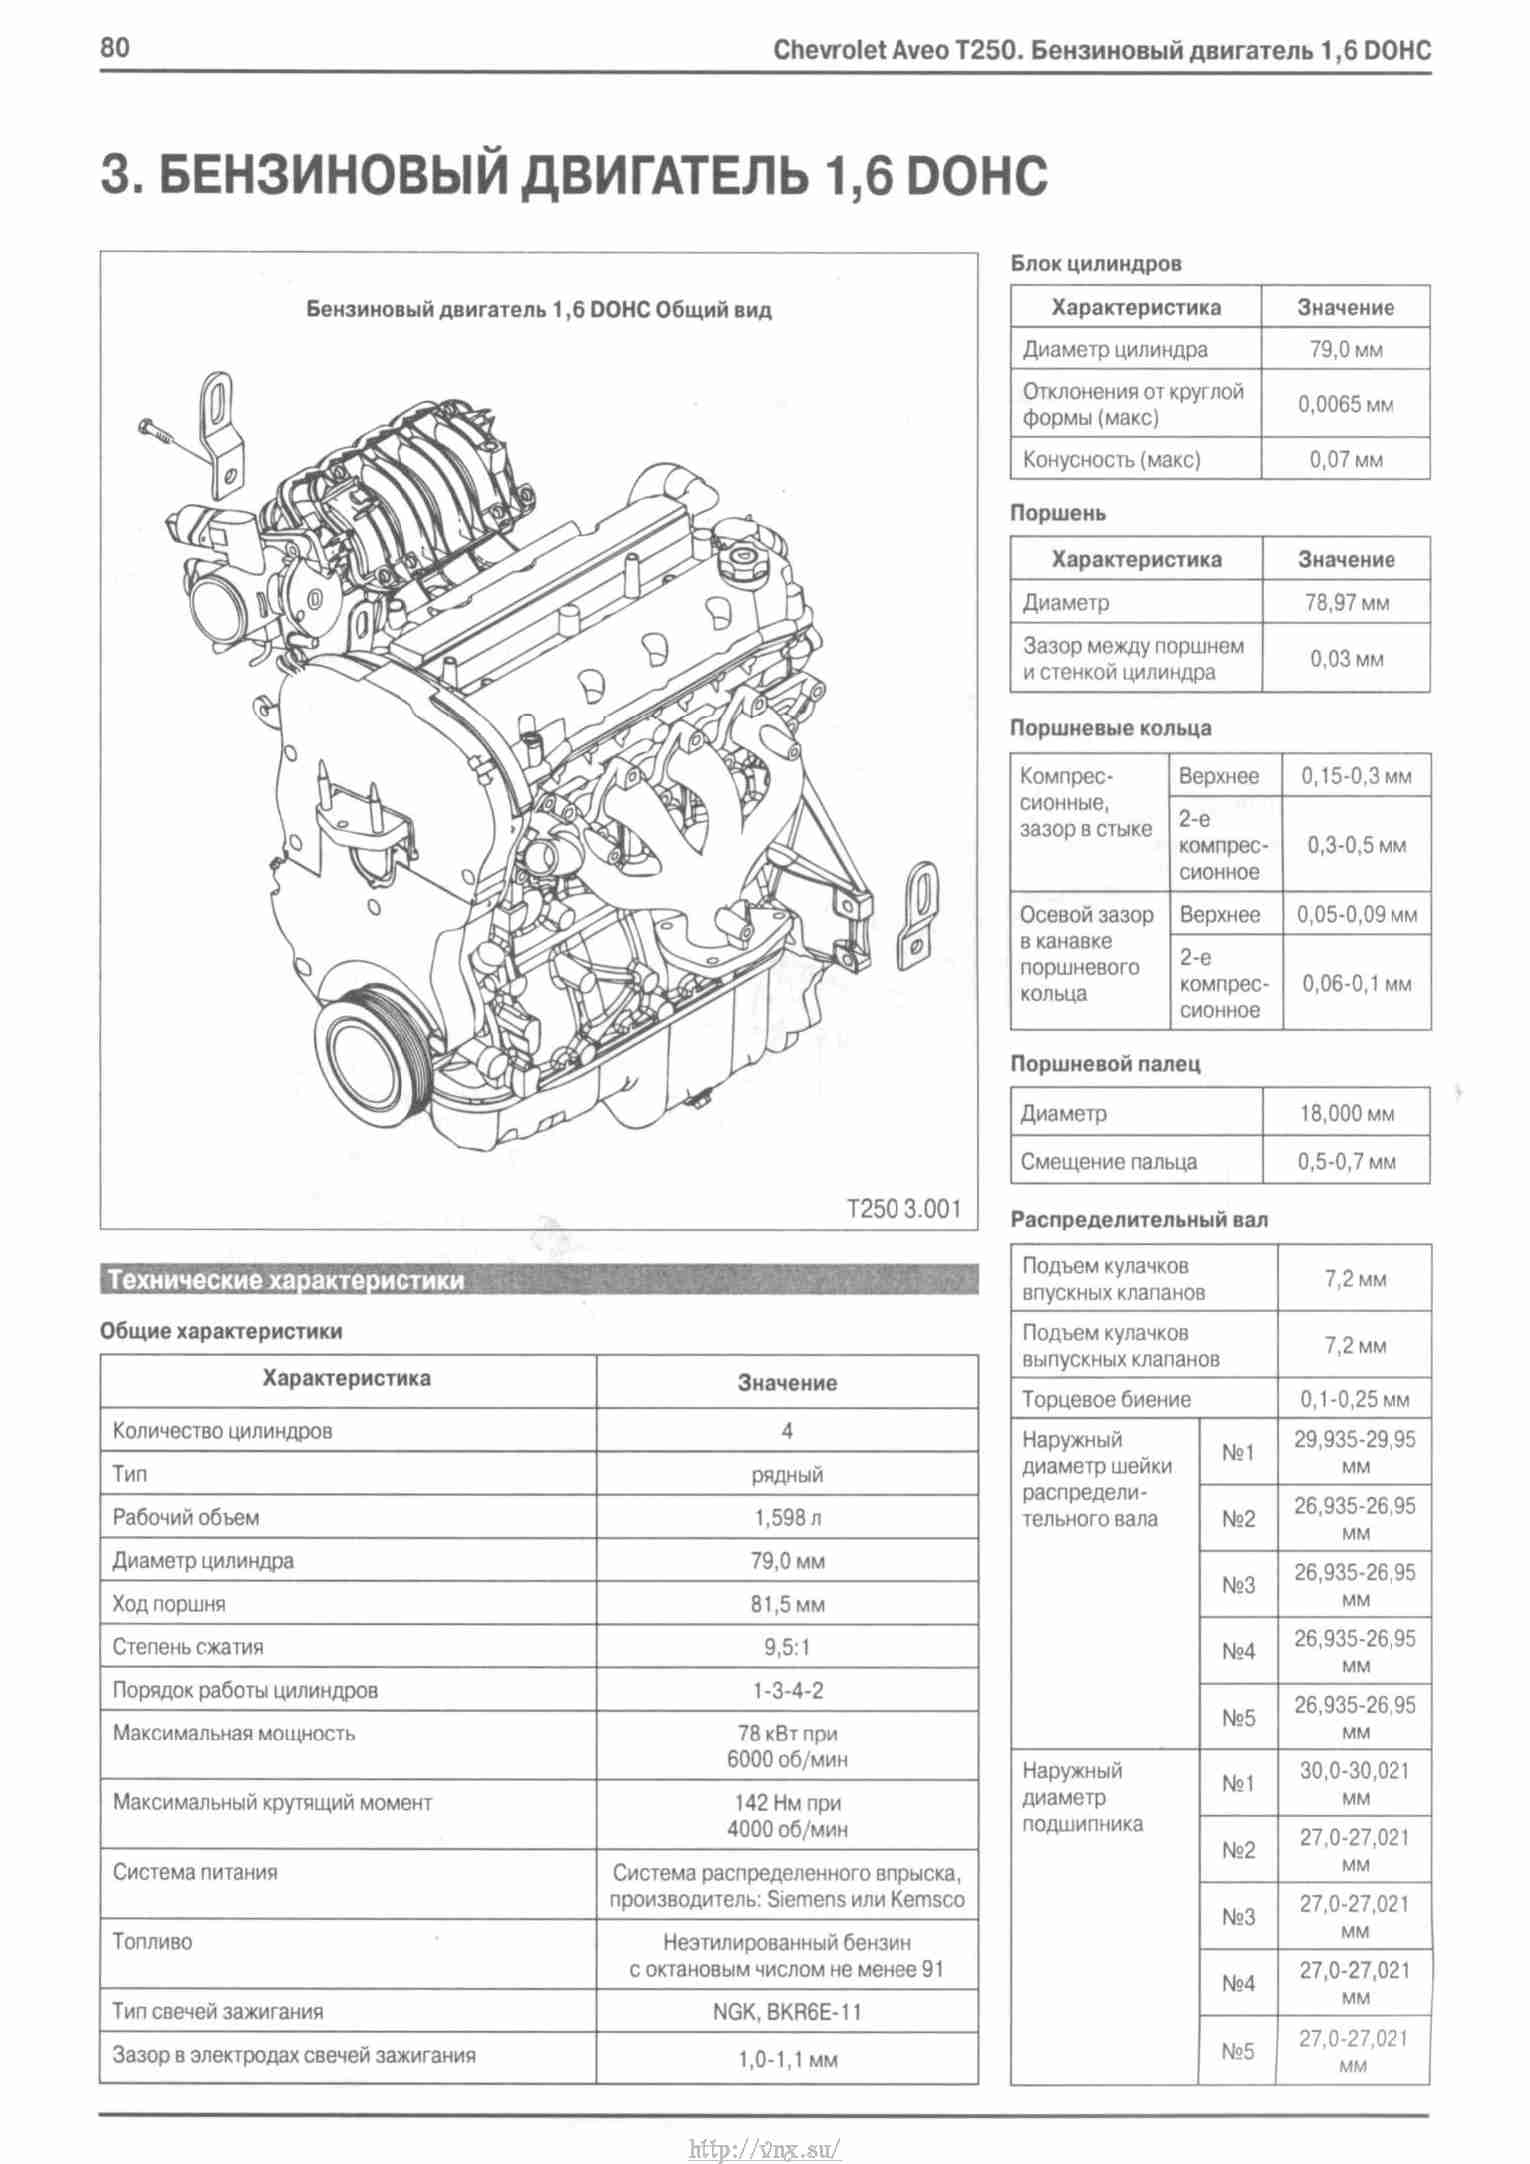 Двигатель F16D3 создавался для нужд концерна GM, устанавливался в автомобили Daewoo, Chevrolet и ZAZ Серийно выпускается с 2004 года, имеет объем 1,6 л и мощность 109 л с